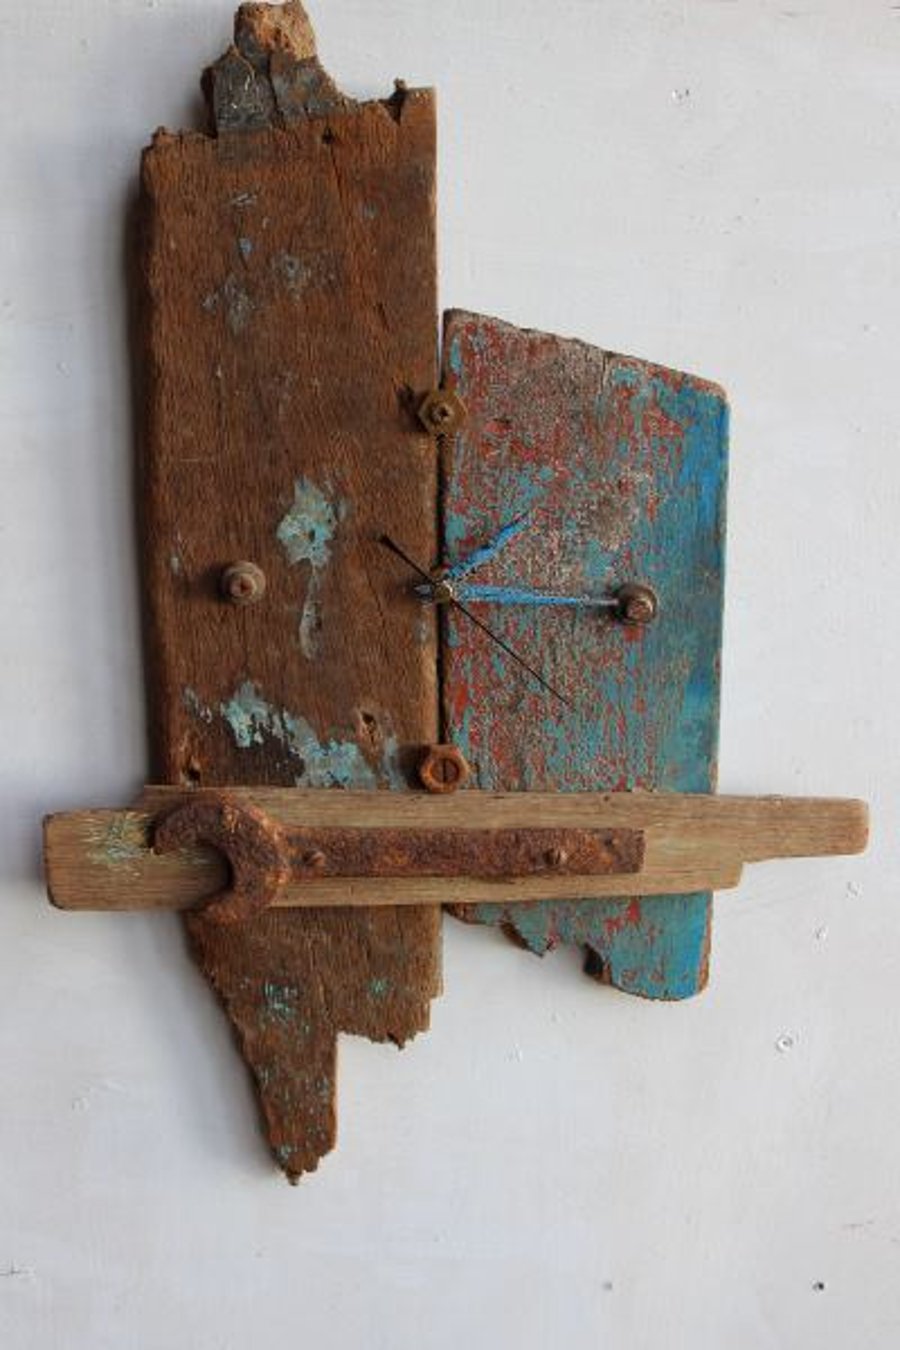 Driftwood Clock, Driftwood Wall Clock, Drift Wood Clock, Beach finds Clock.